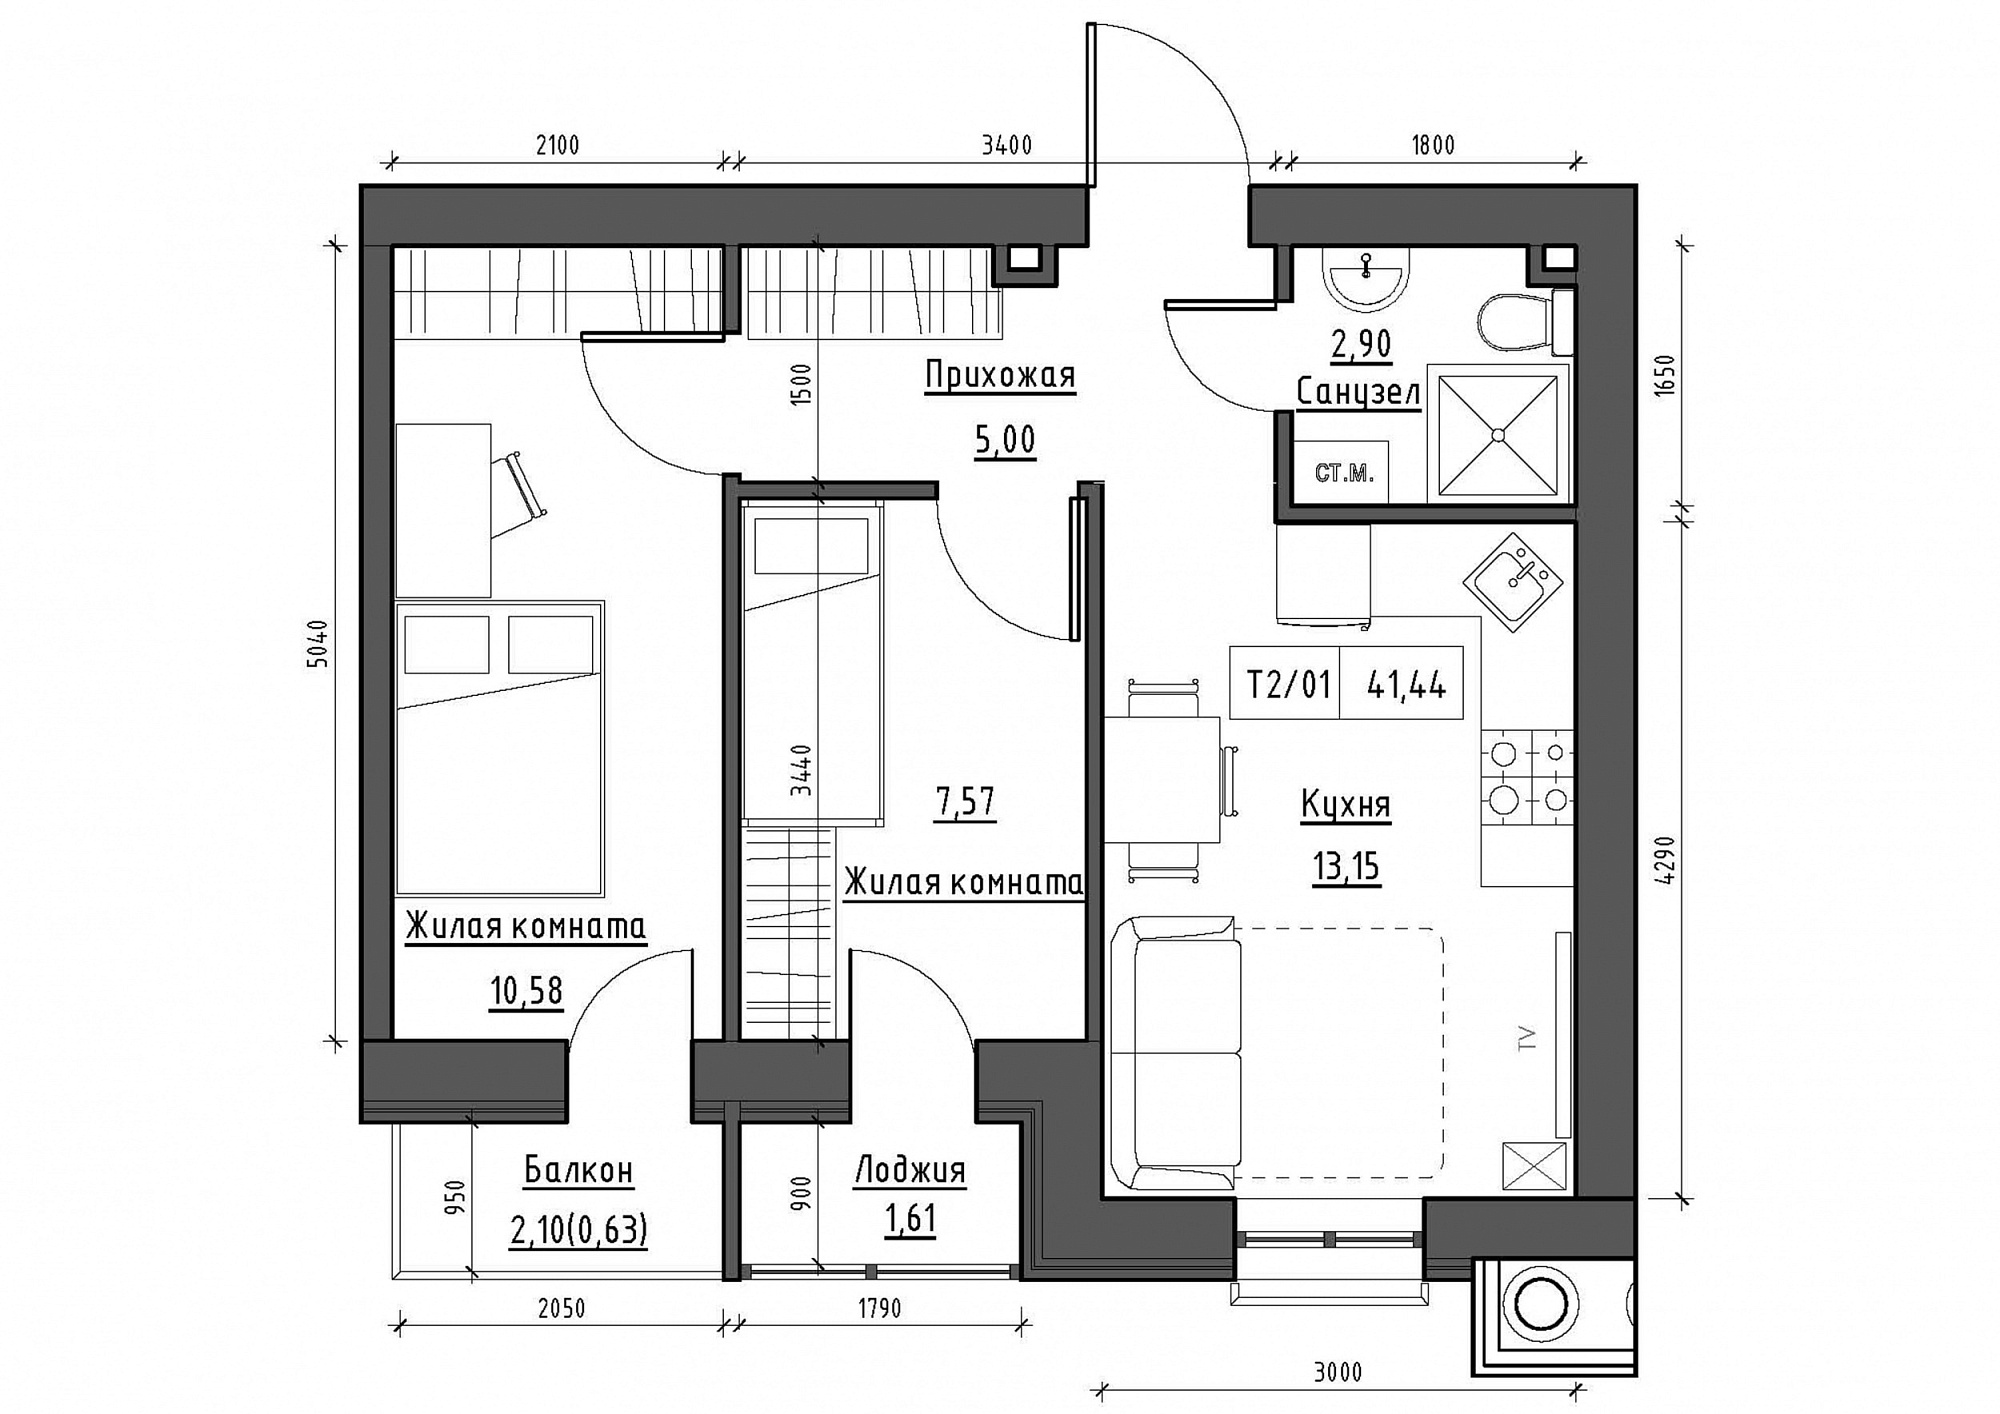 Планування 2-к квартира площею 41.44м2, KS-011-04/0011.